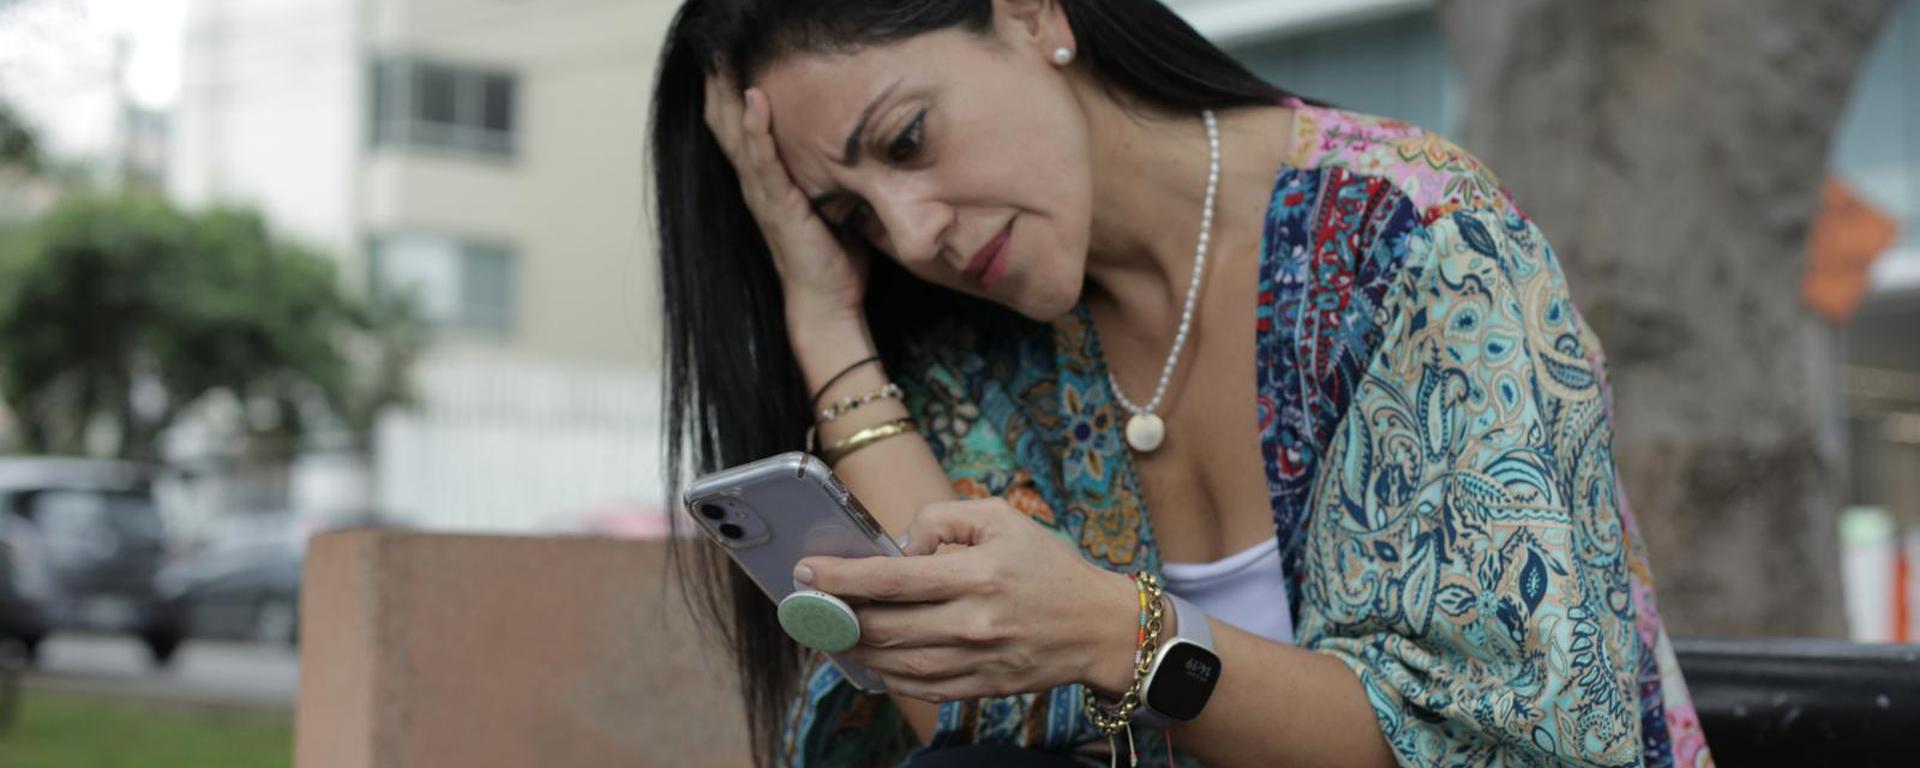 Operadoras trasladan líneas móviles sin el consentimiento de los usuarios: casos suman más de 10 millones en multas